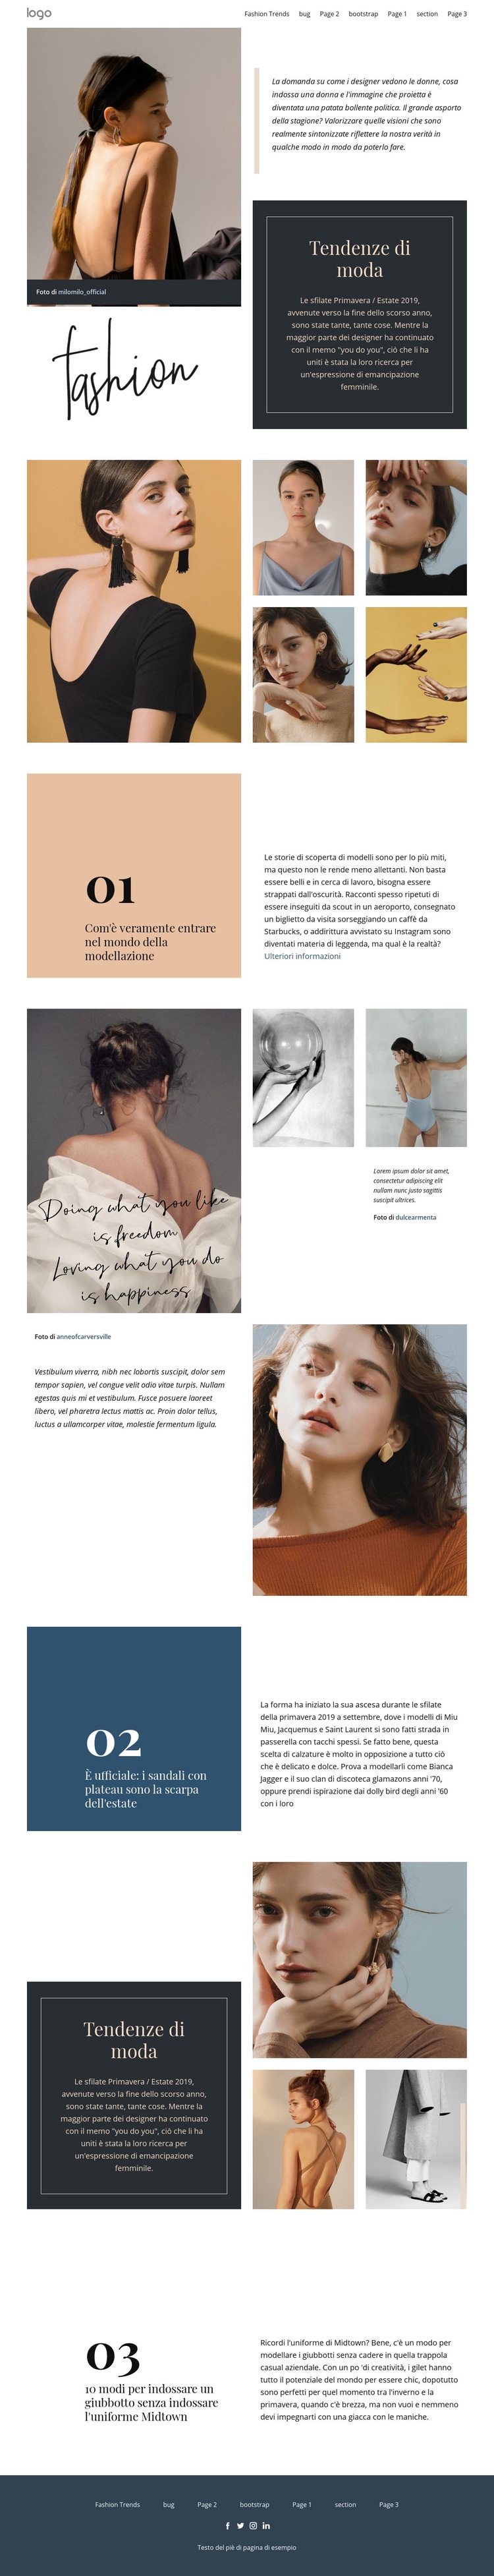 Designer vision of fashion Progettazione di siti web